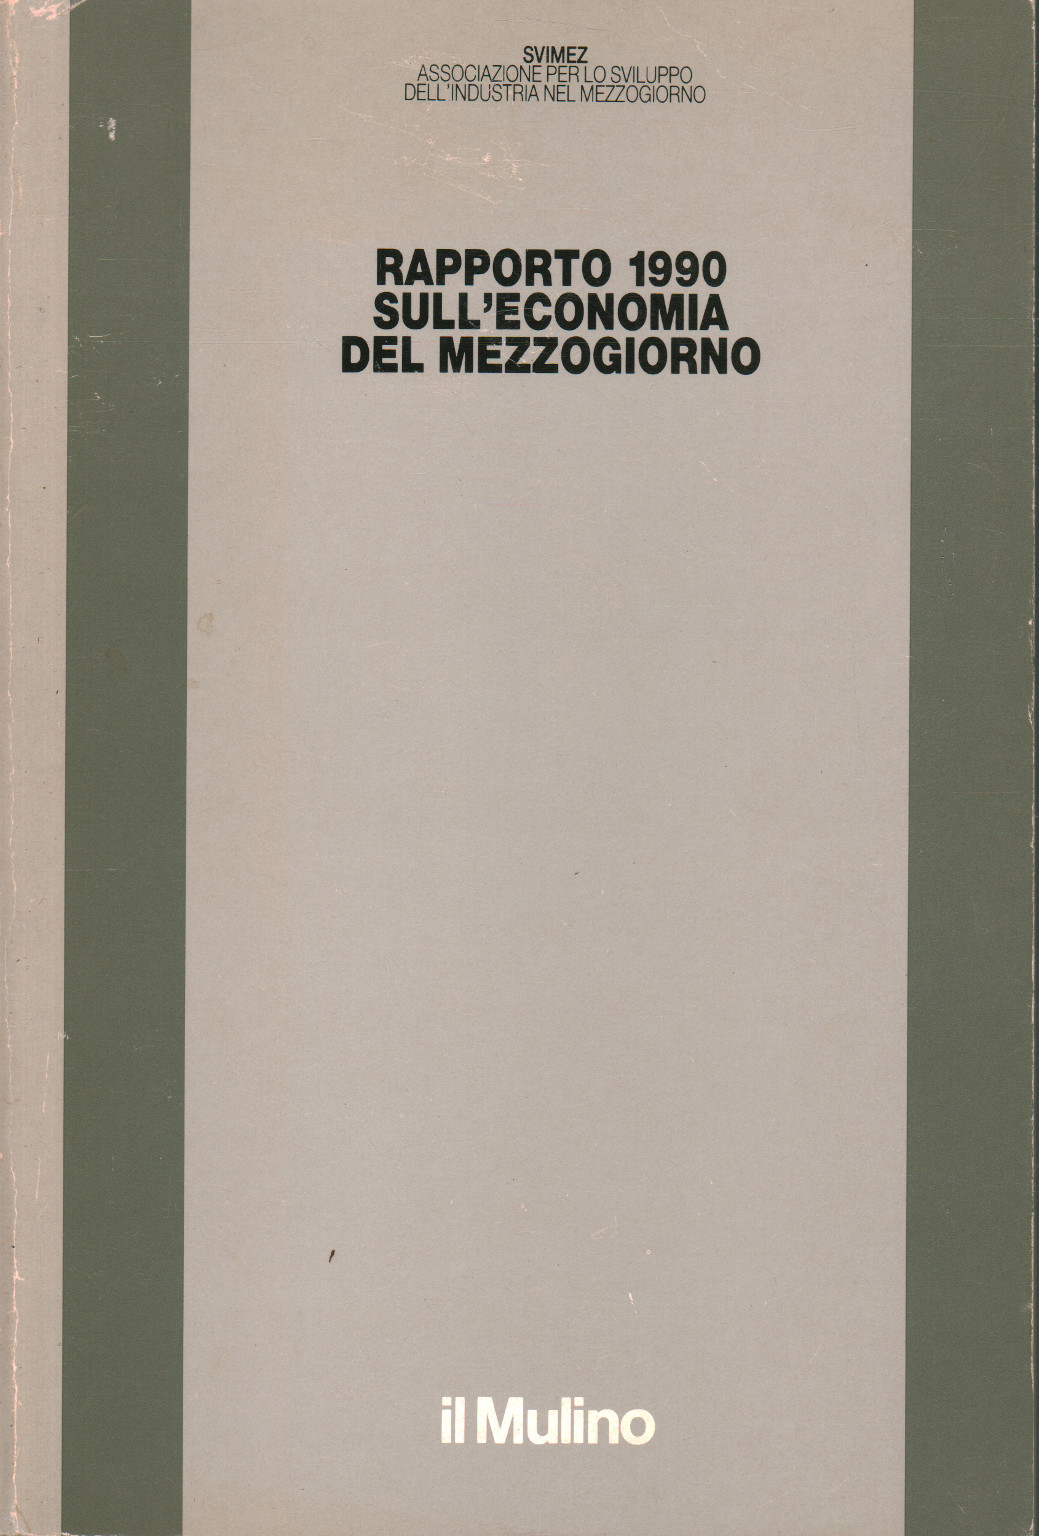 - Bericht 1990 über die wirtschaft des südens, s.zu.